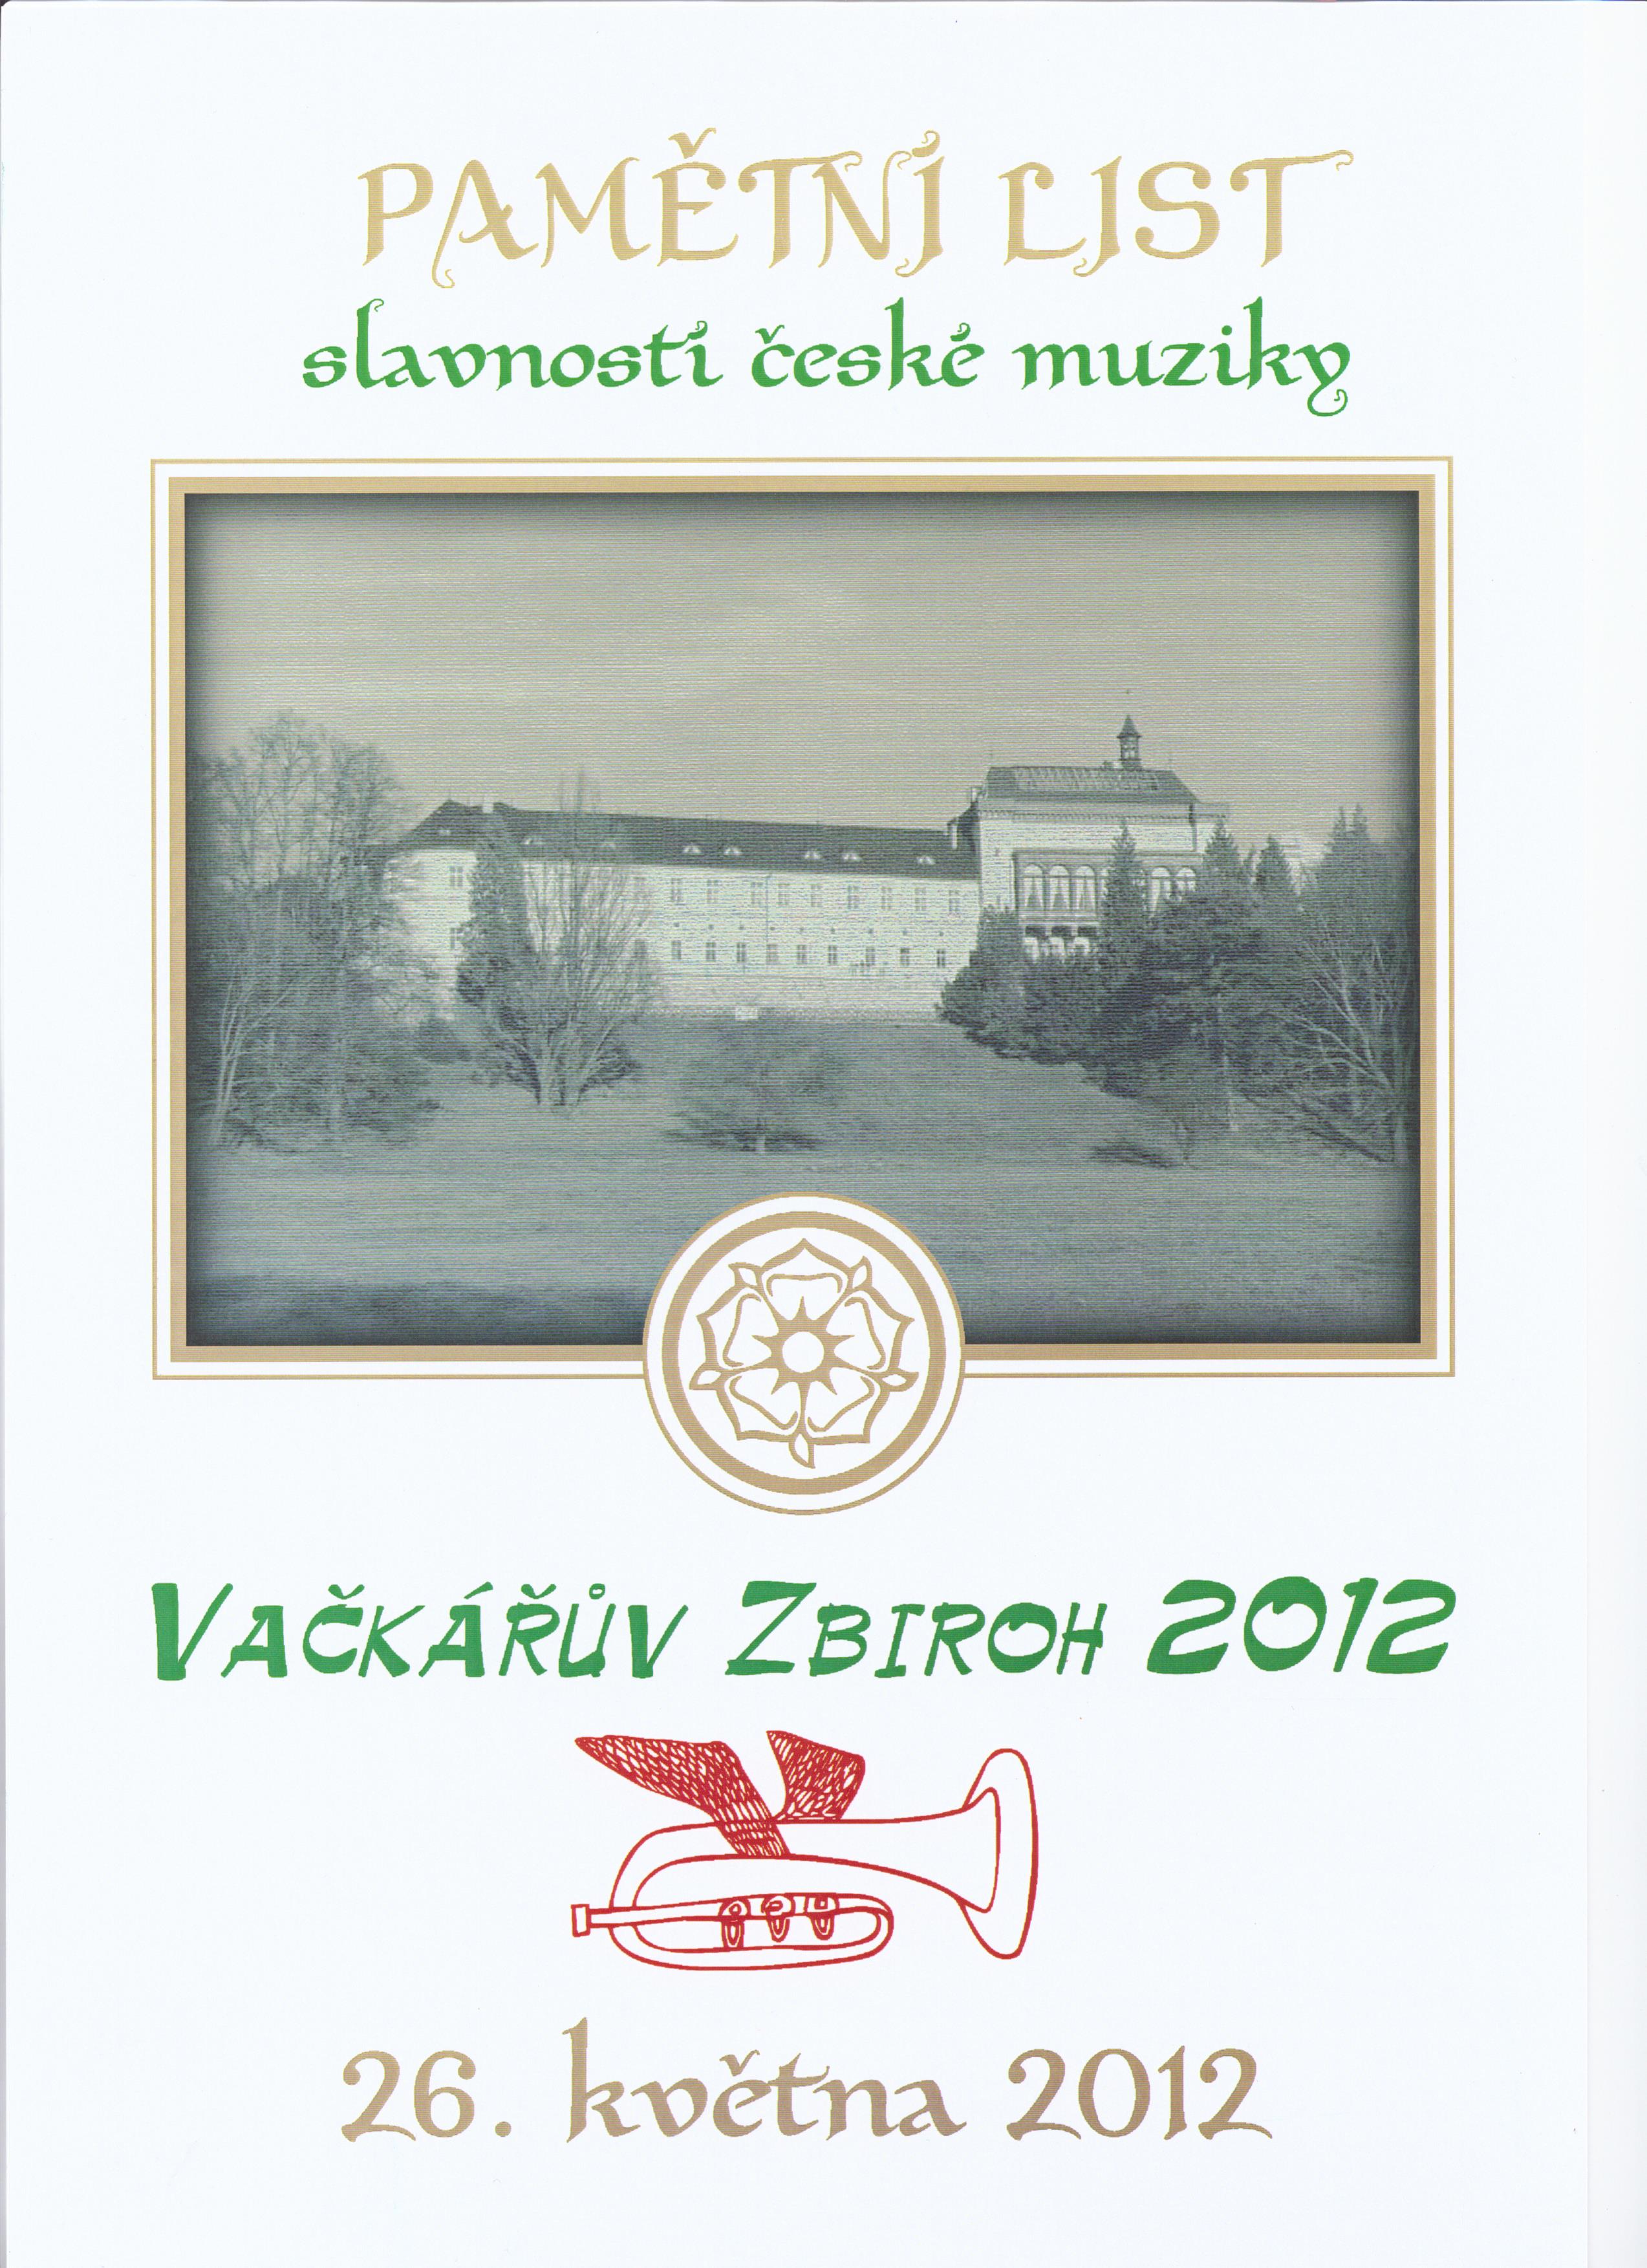 Vačkářův-Zbiroh-2012-pamětní-list